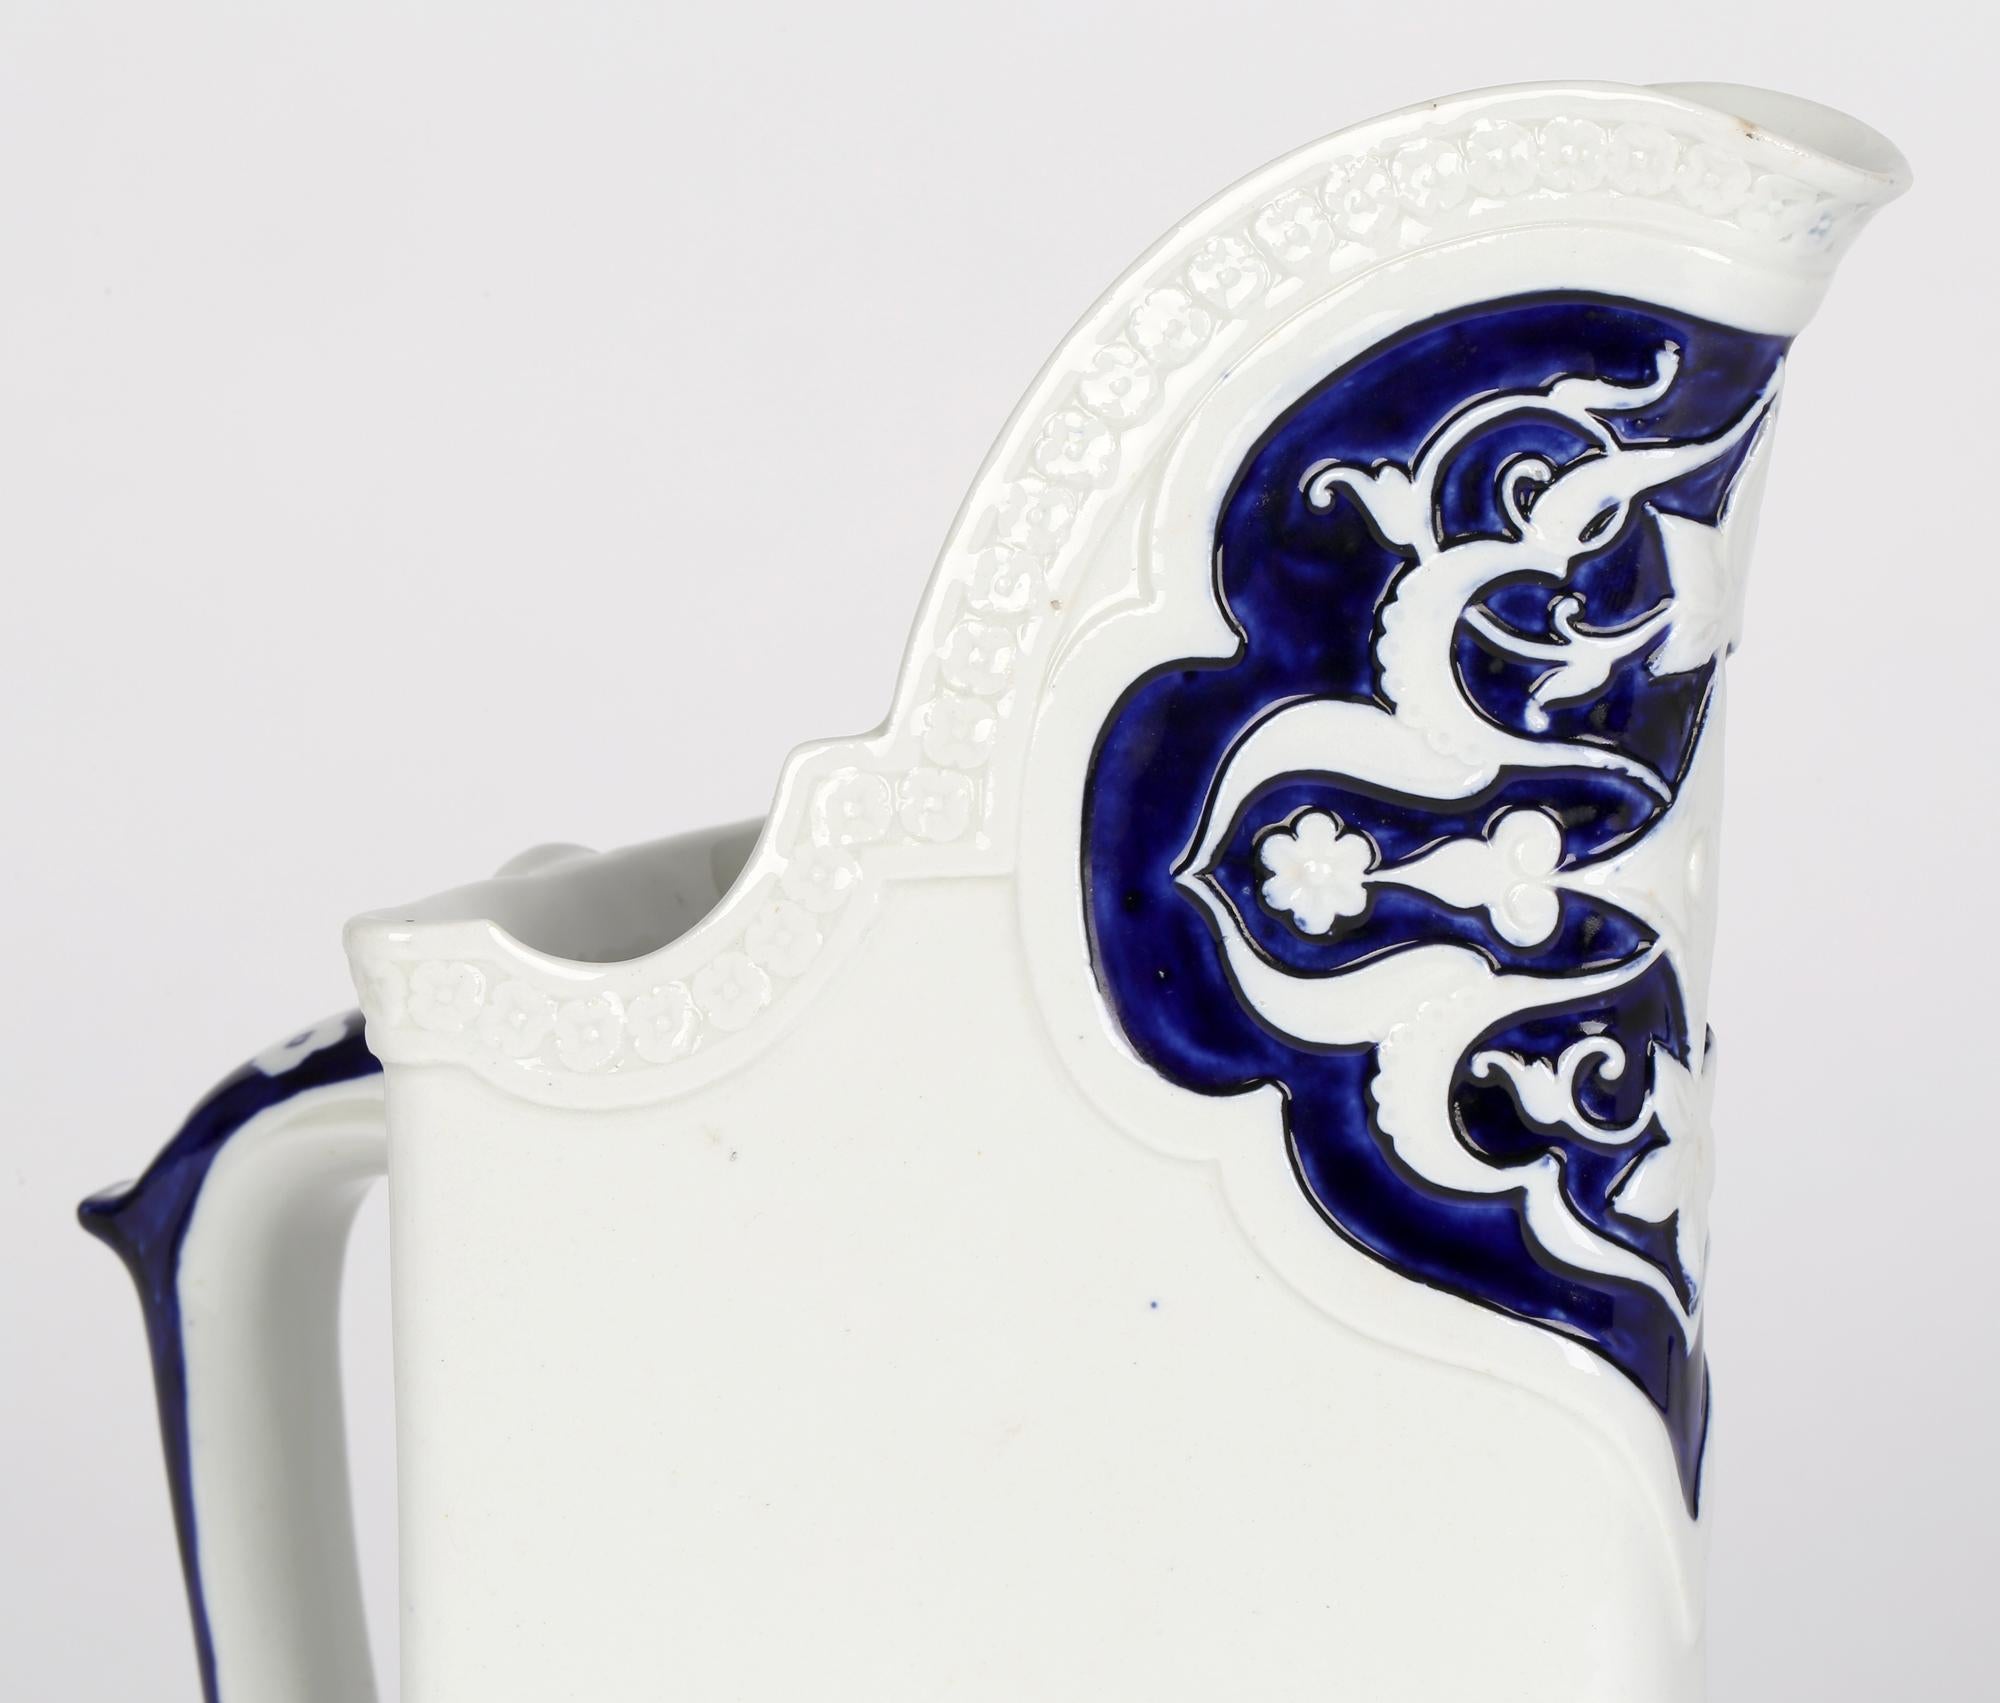 Une grande cruche très inhabituelle de forme triangulaire bleu et blanc du mouvement esthétique de Royal Whiting, datée de 1877. La cruche en porcelaine rappelle beaucoup les dessins de Christopher Dresser par ses angles et ses motifs. Elle est